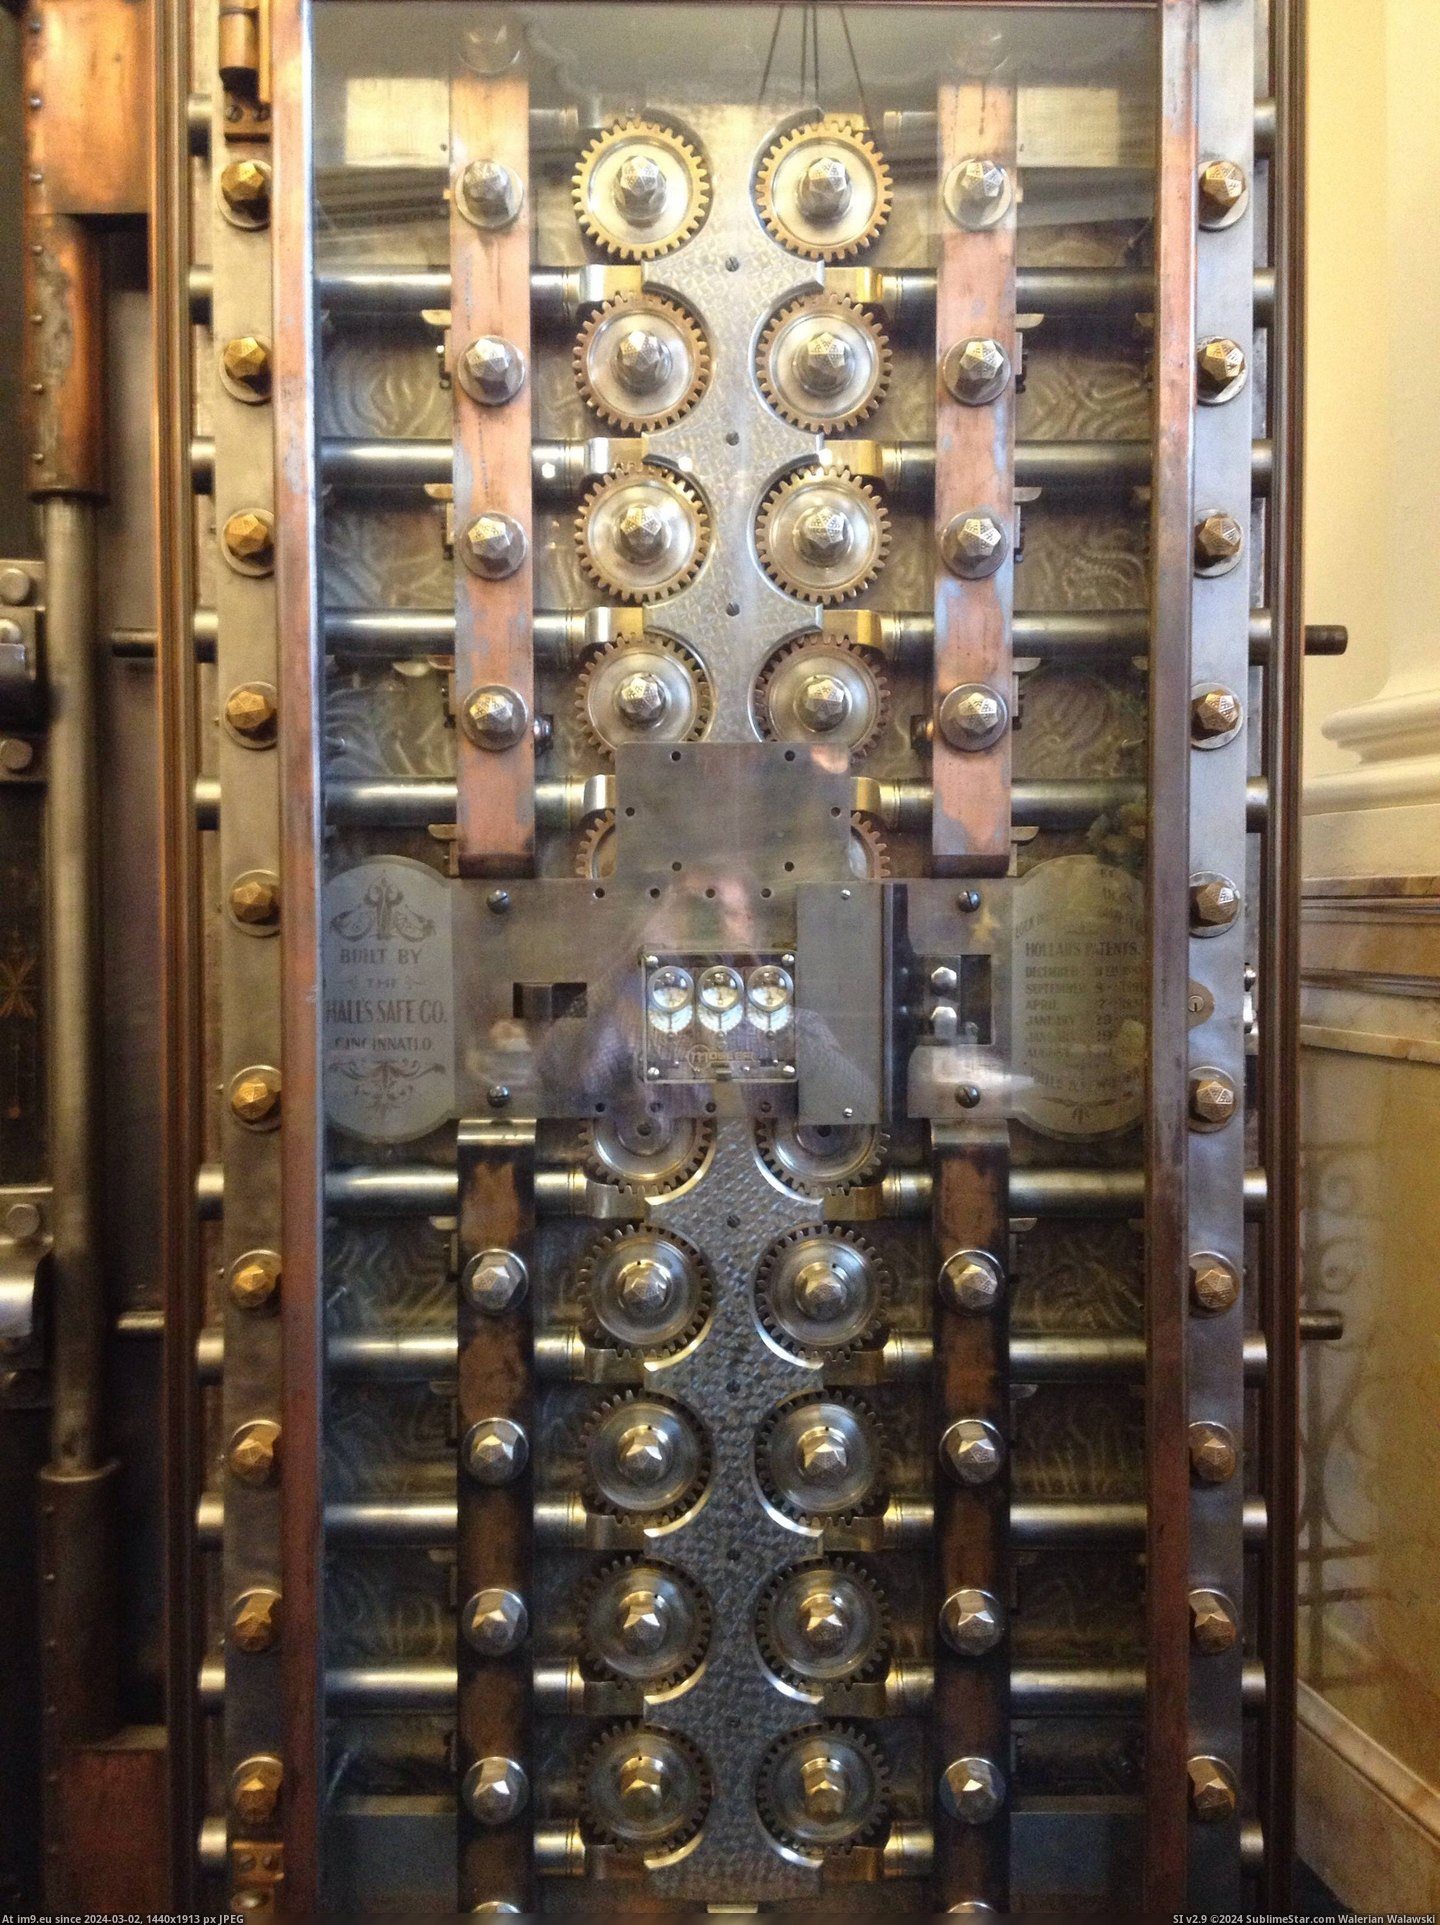 #Work #Beautiful #Engineering #Vault #1800s #Door #Bank [Pics] Inside of the vault door at the bank I work at. Beautiful engineering from 1800s Pic. (Image of album My r/PICS favs))